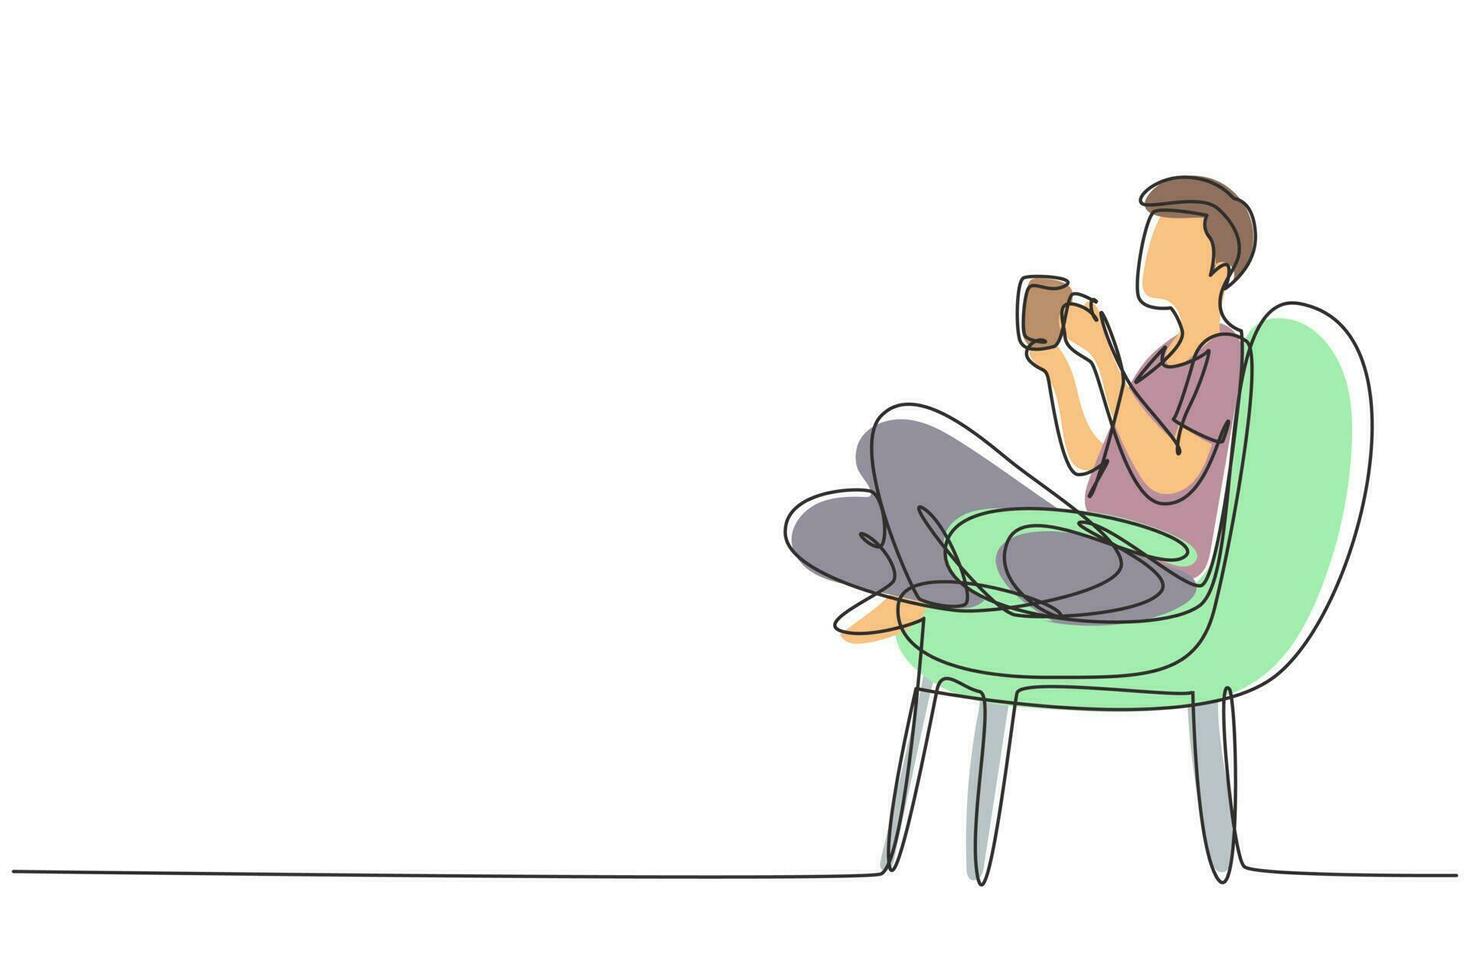 hora do chá de desenho de linha única contínua. rapaz bonito relaxado sentado em uma cadeira moderna, desfrutando de um café quente em frente à janela, vista lateral, espaço livre. ilustração em vetor desenho gráfico de uma linha